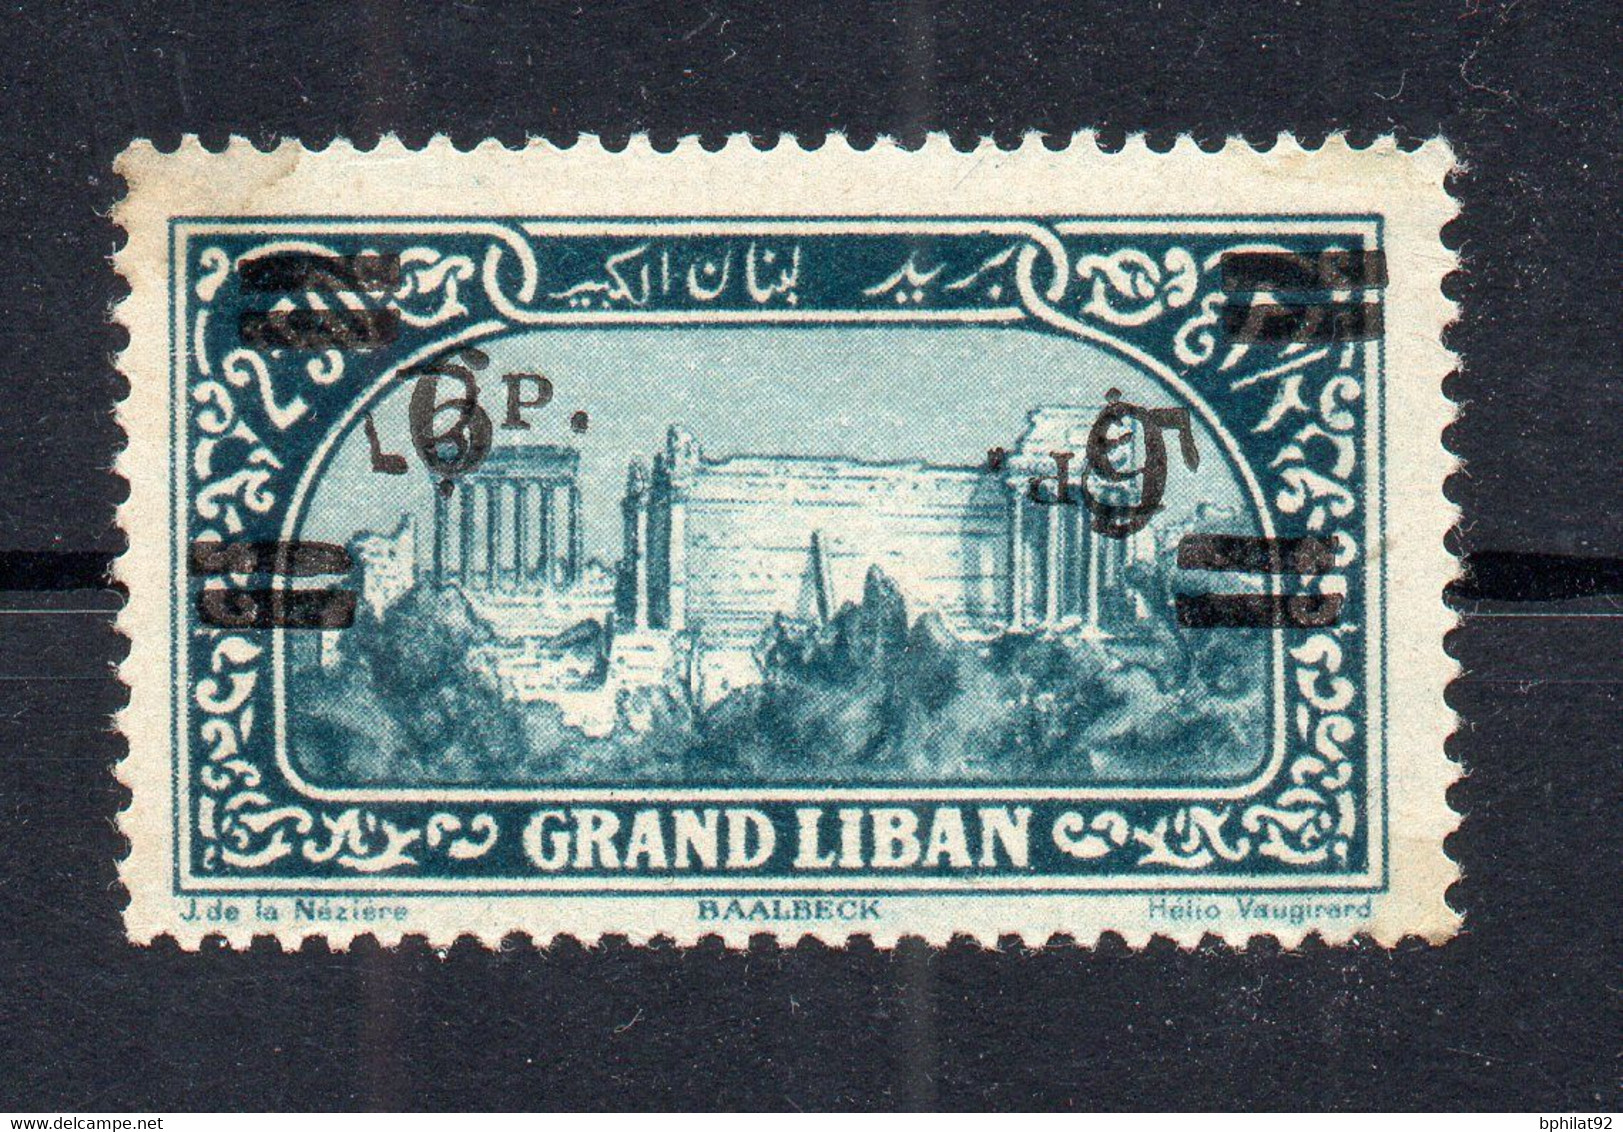 !!! LIBAN, N°80f VARIETE DOUBLE SURCHARGE UNE RENVERSEE NEUF * - Unused Stamps